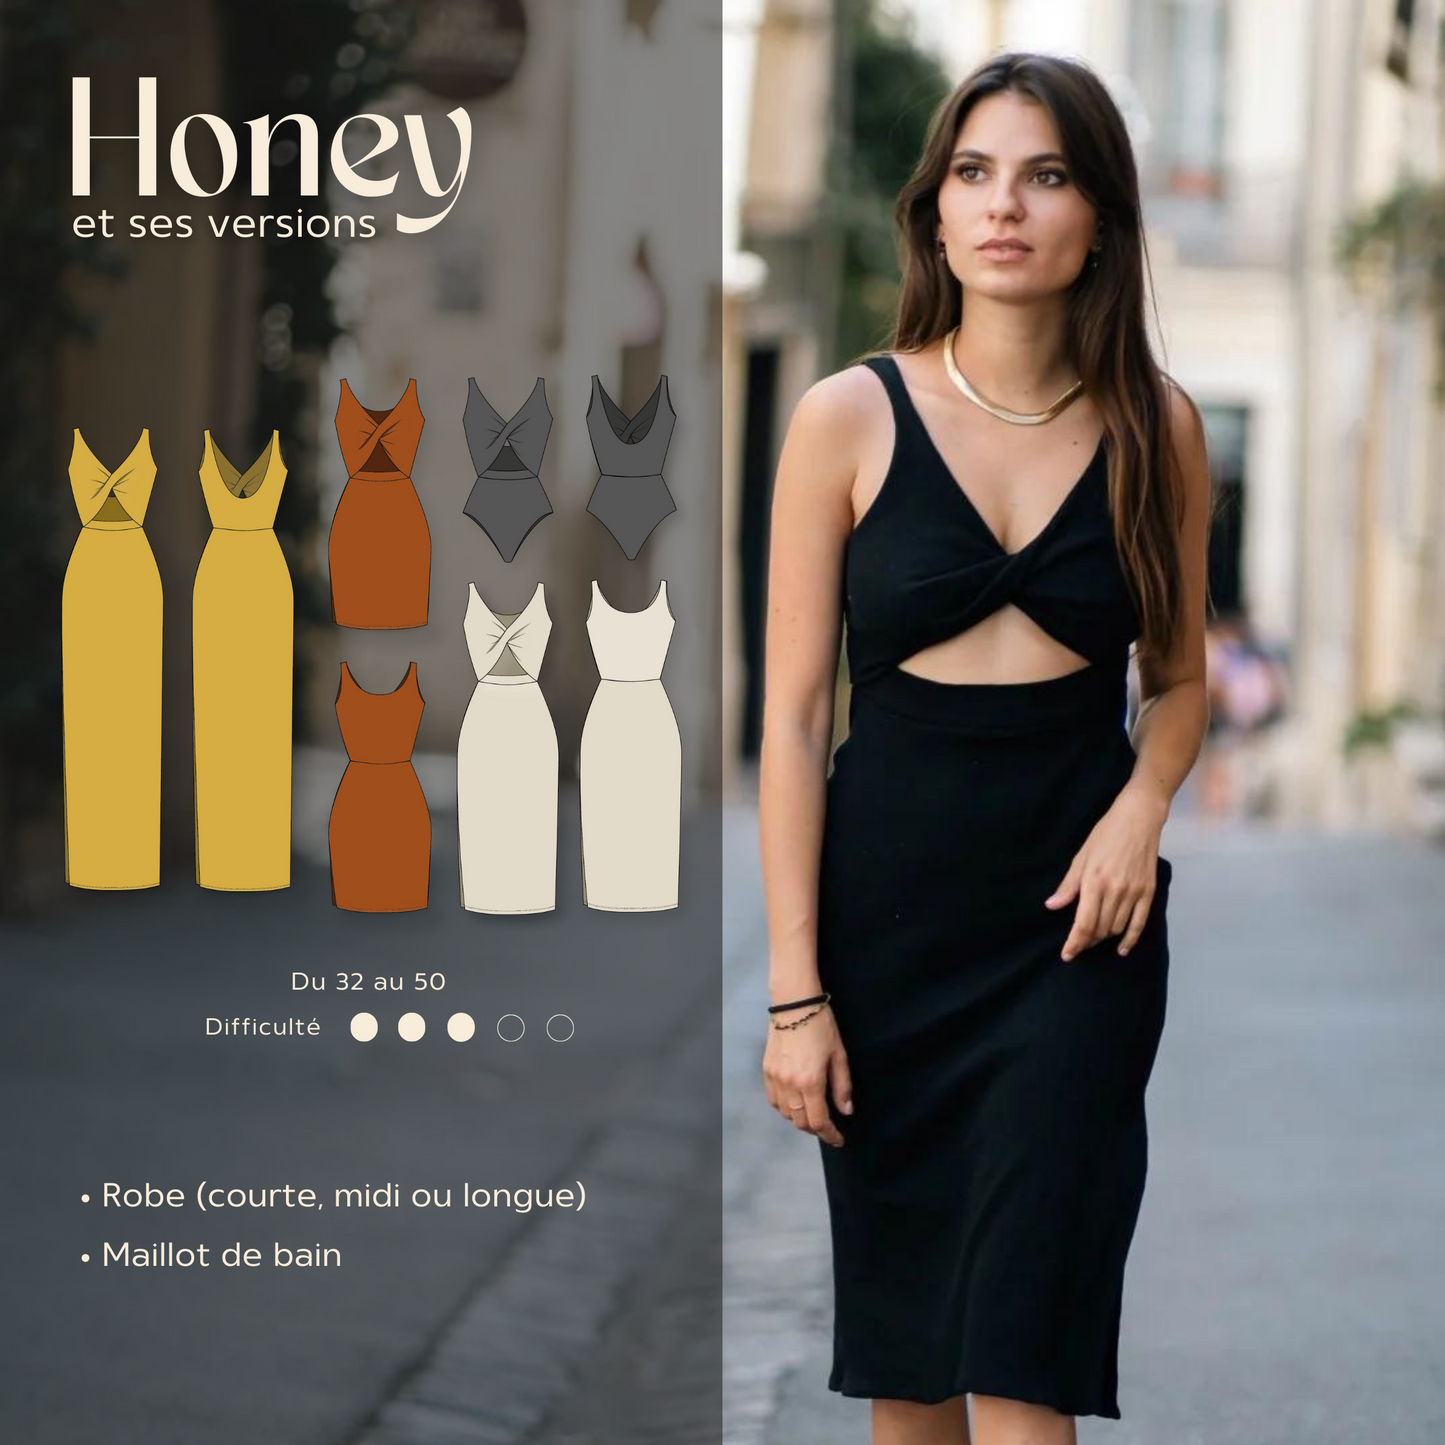 Honey (French version)